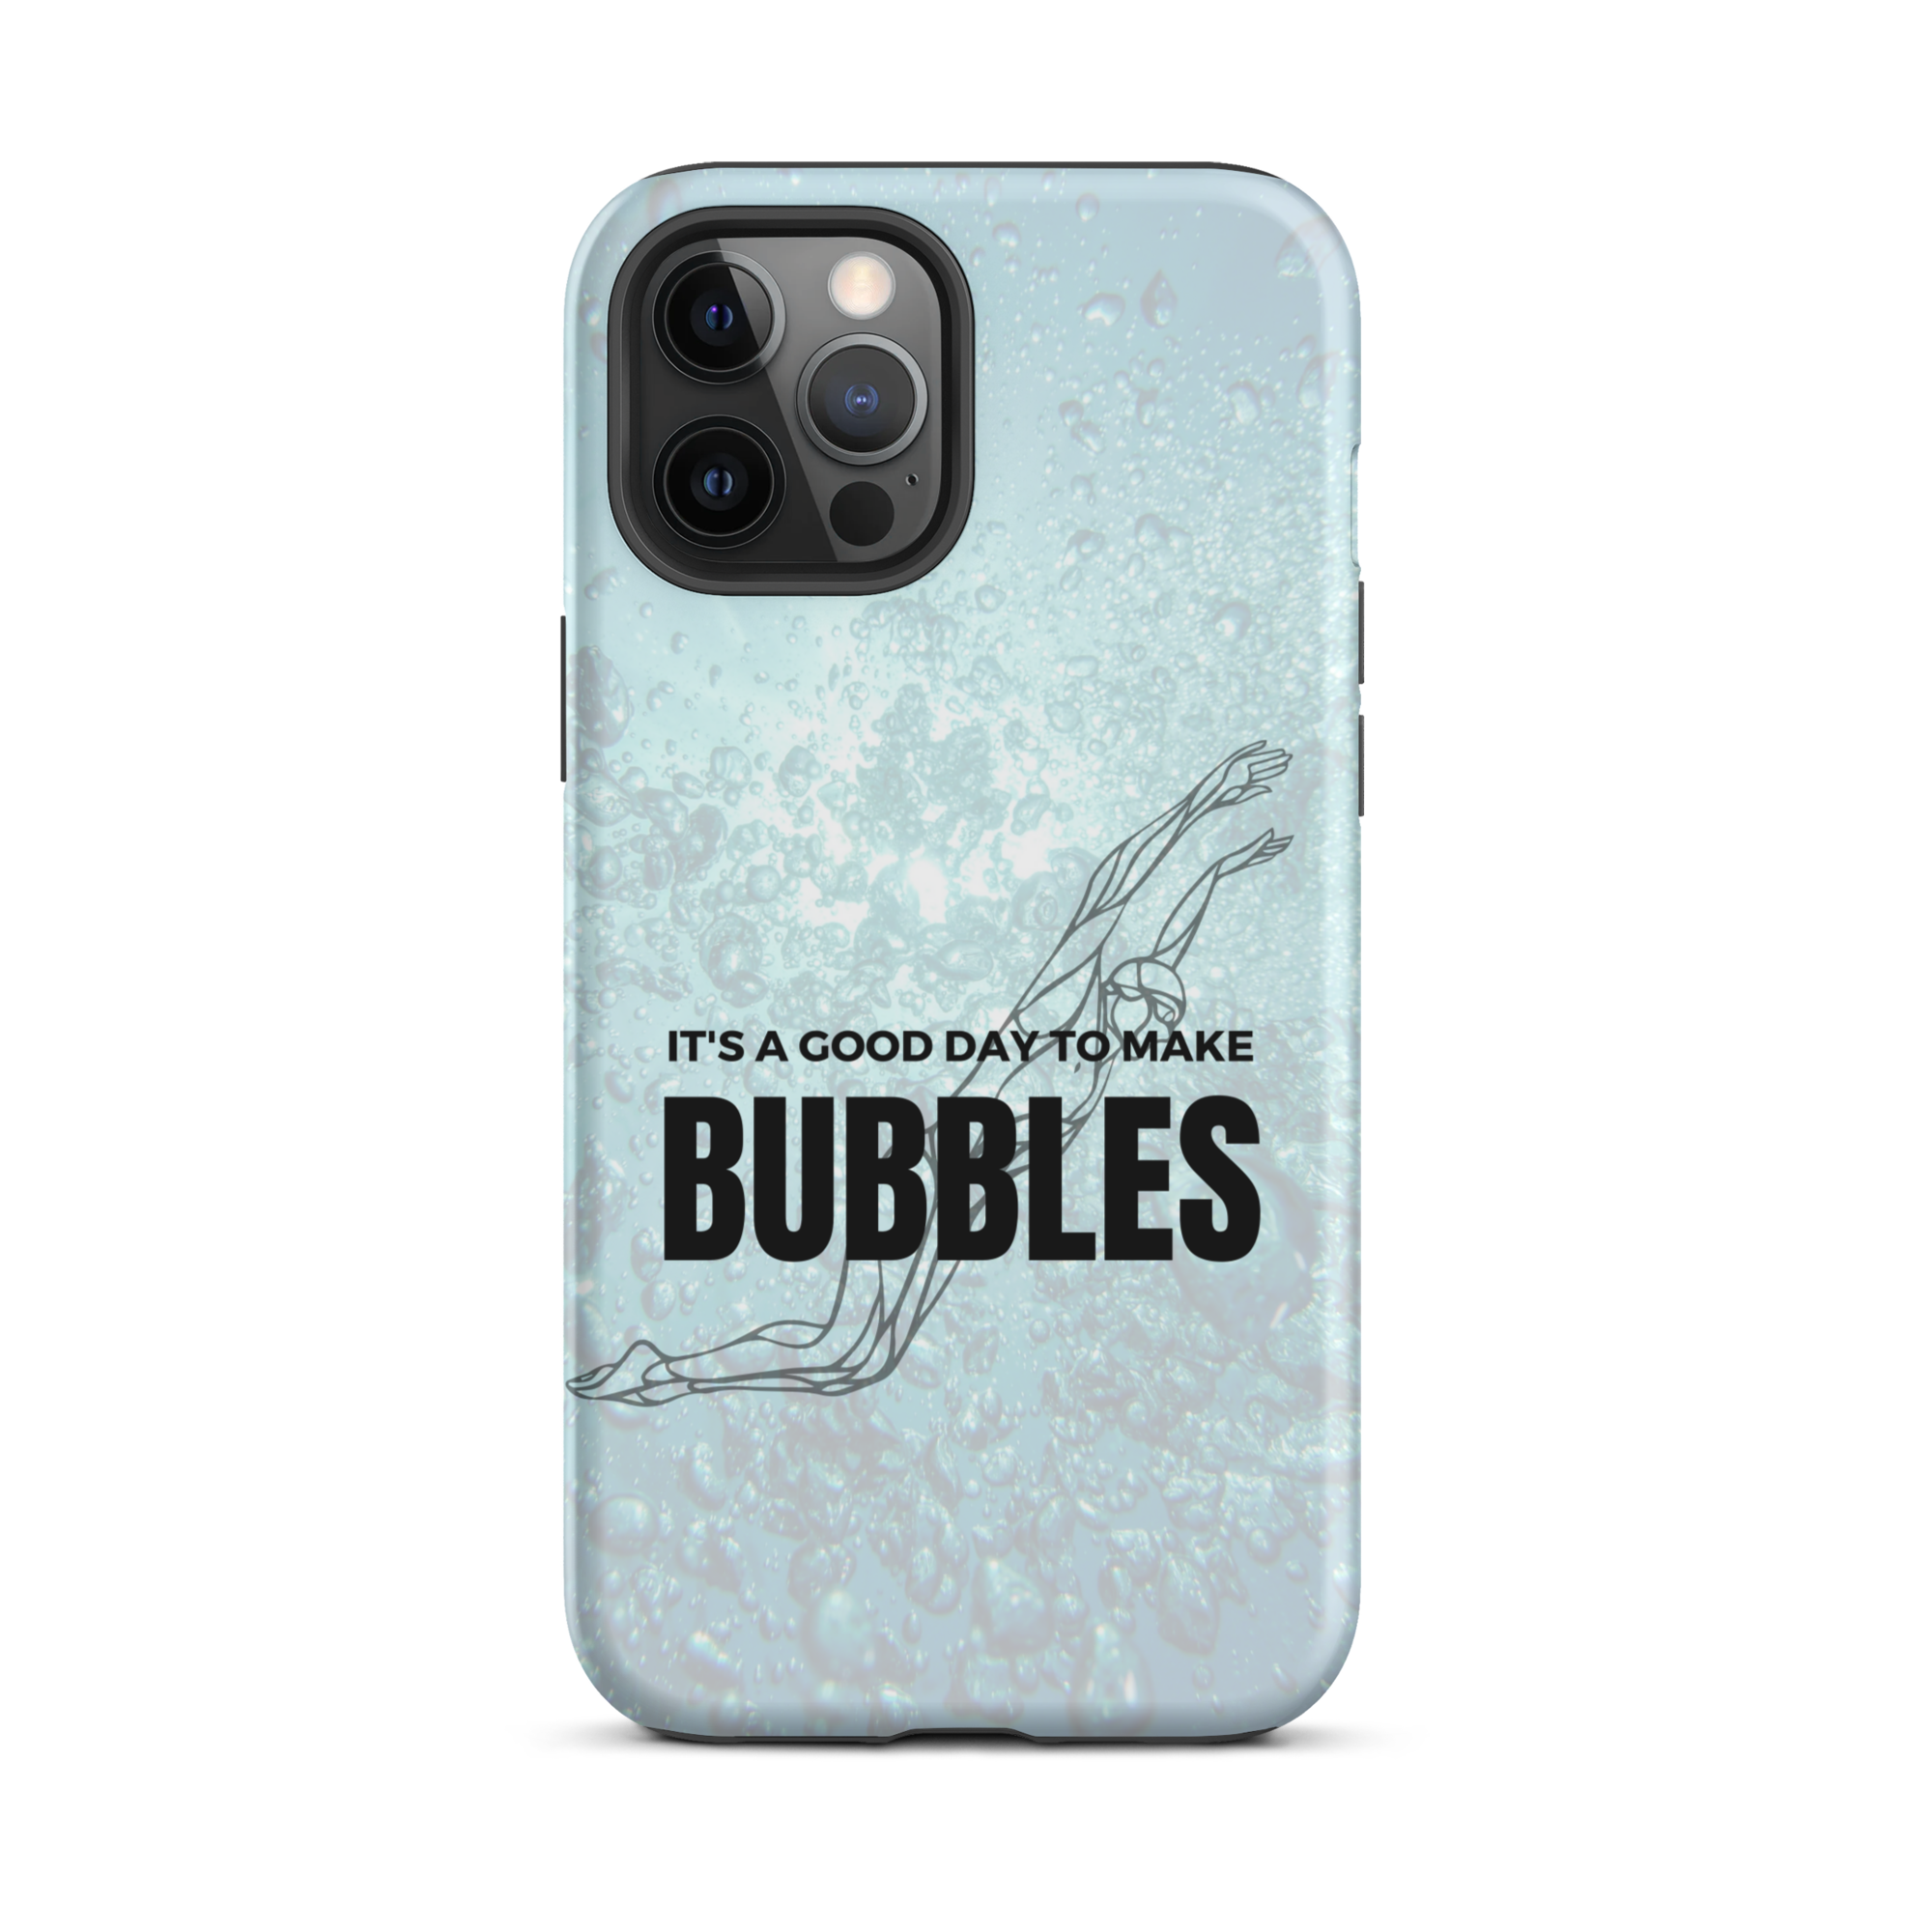 "Making Bubbles" - Tough iPhone case